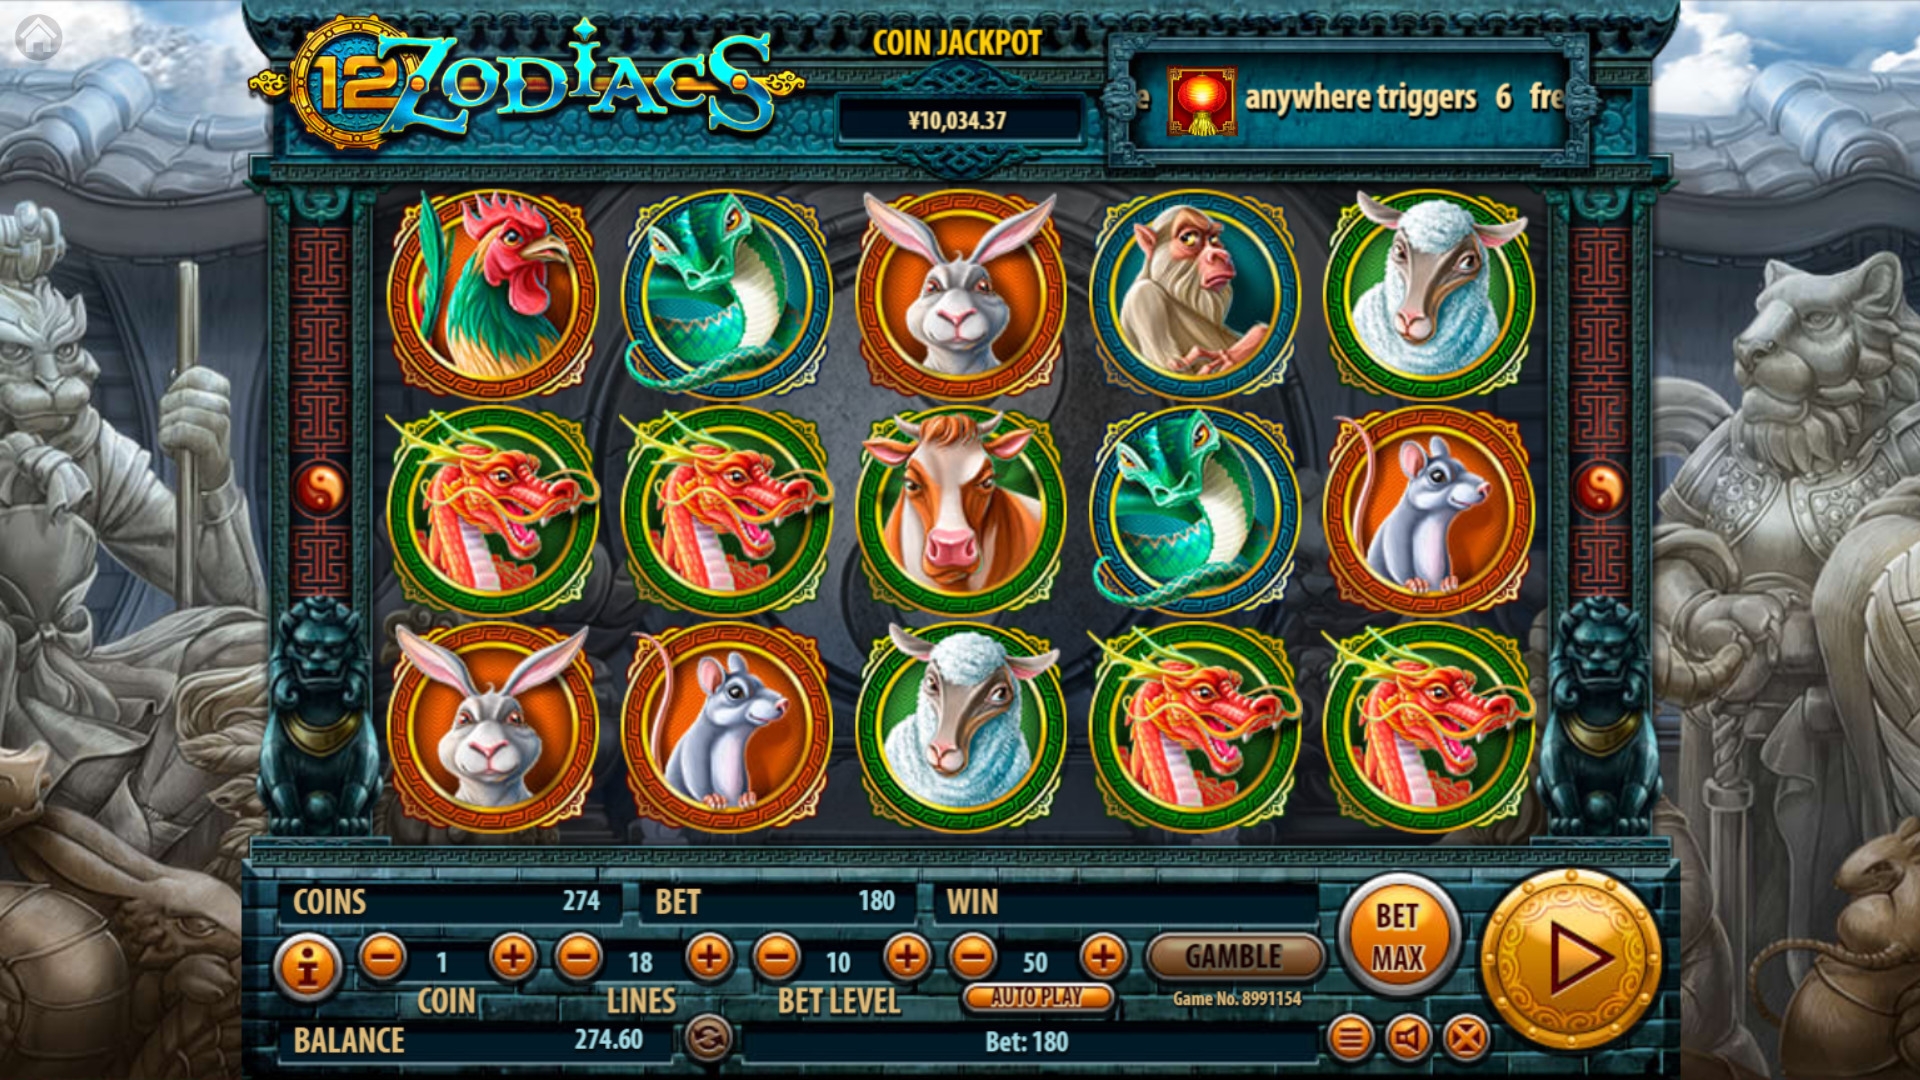 12 Zodiacs (12 Zodiacs) from category Slots